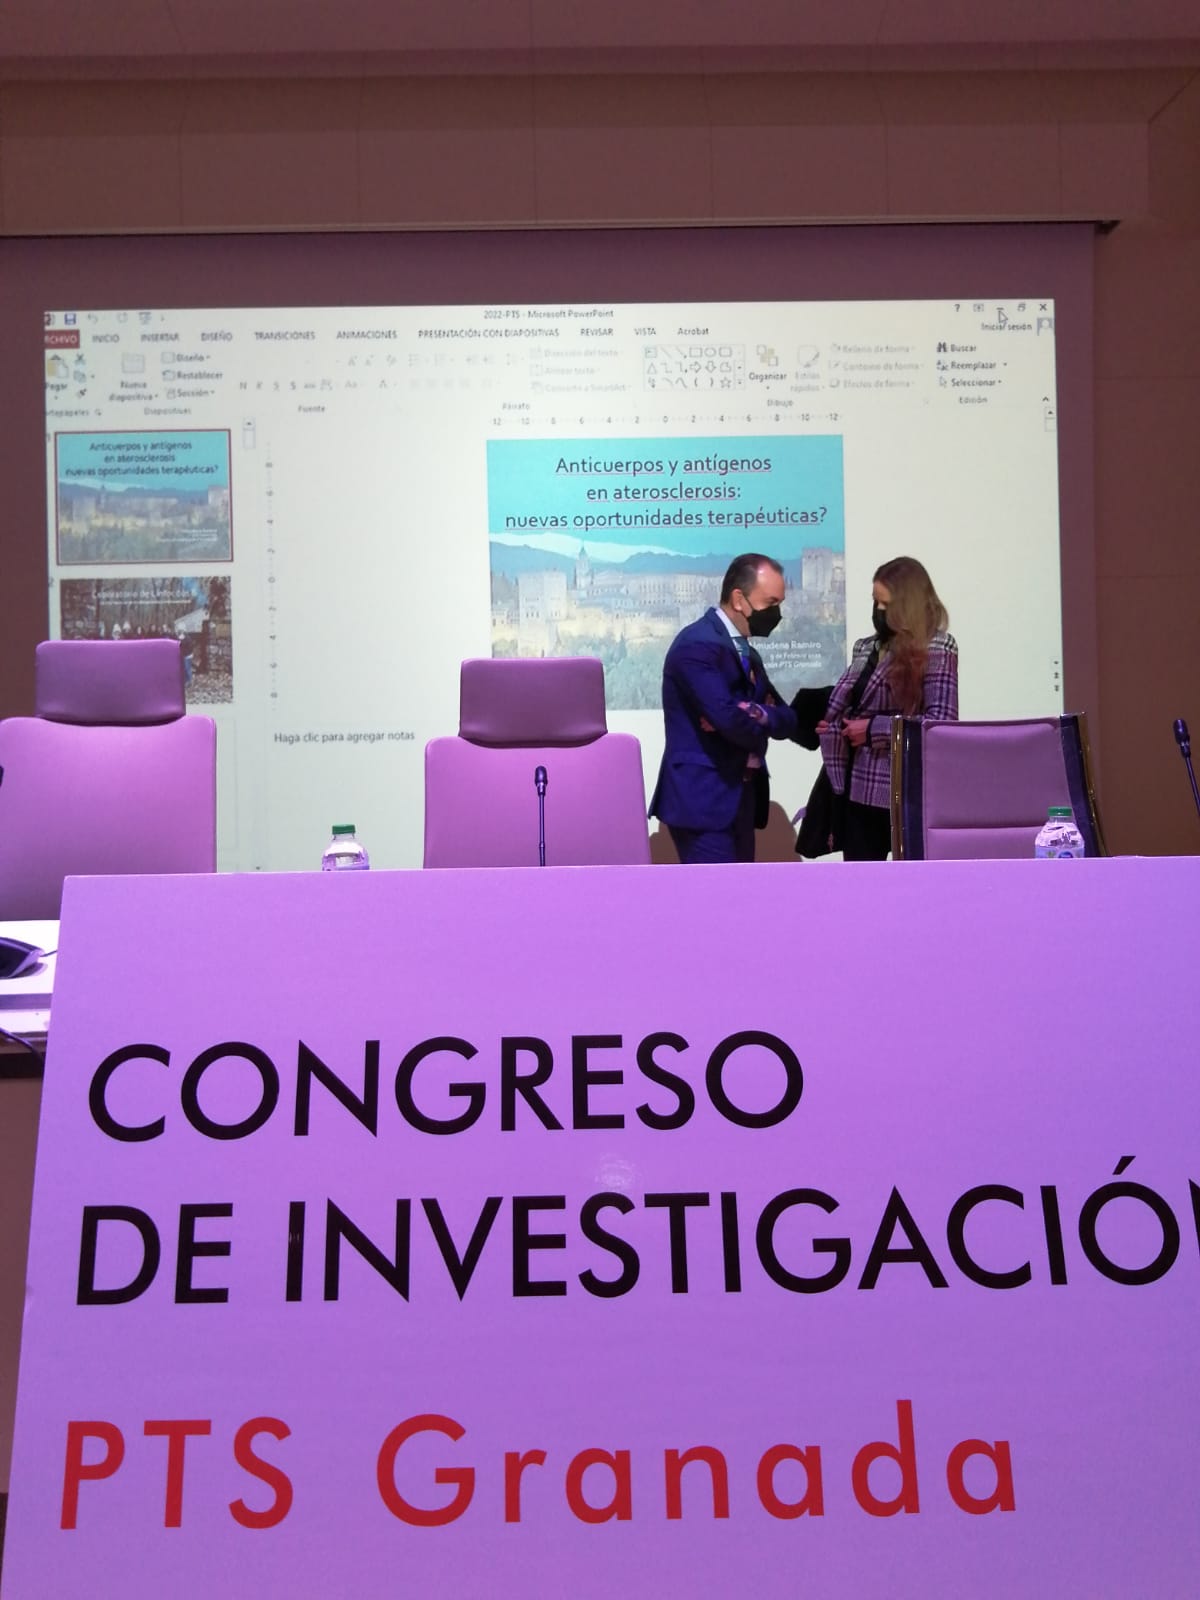 El II Congreso de Investigación PTS Granada reúne a 400 médicos e investigadores del sector biosanitario de Andalucía